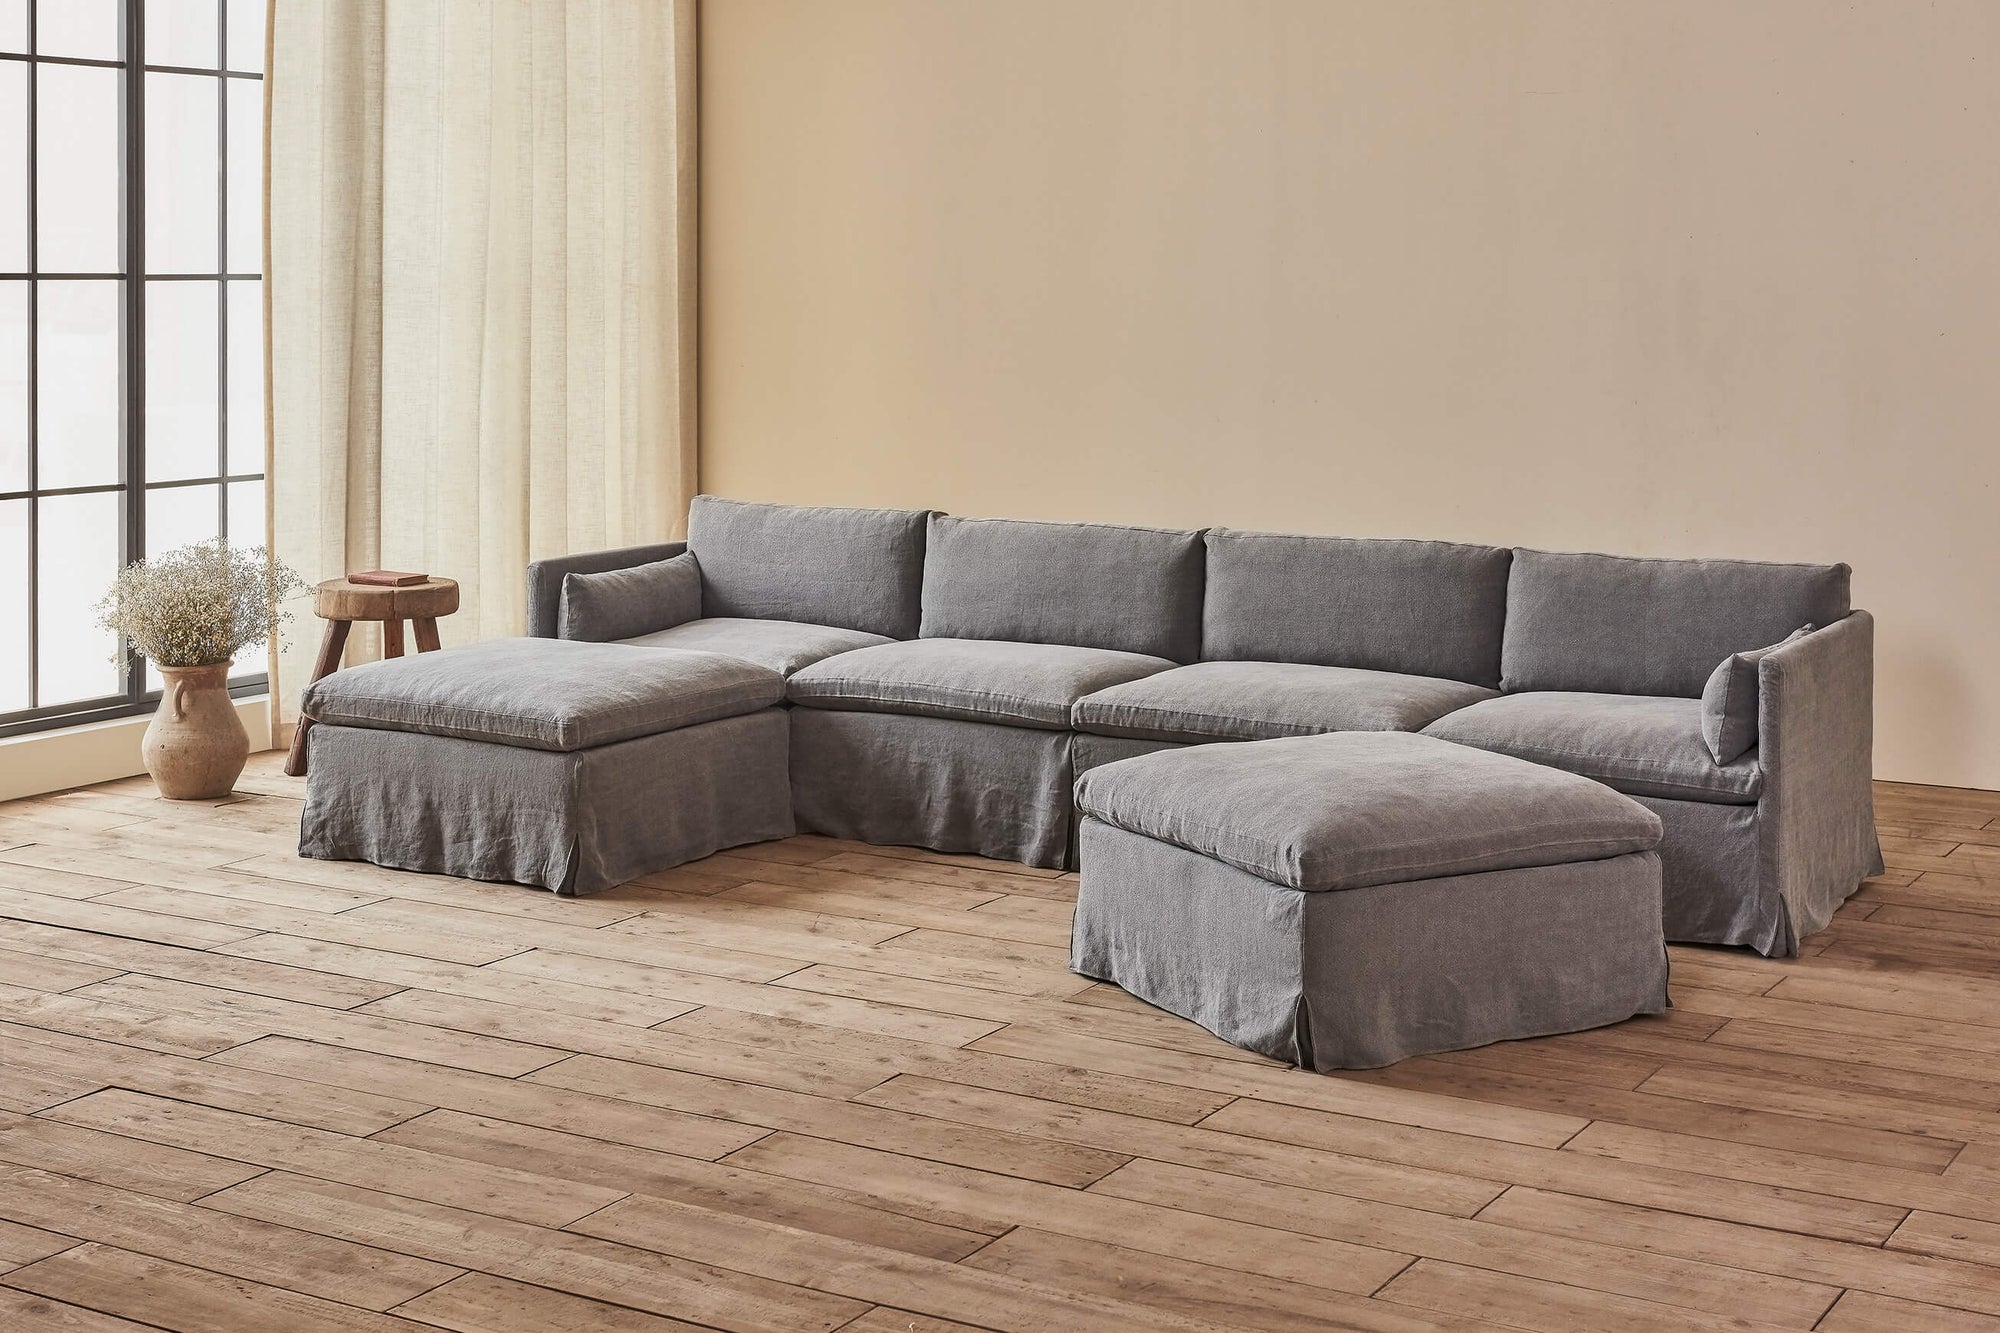 Gabriel U-Shape Sectional Sofa in Ink Cap, a medium cool grey Light Weight Linen